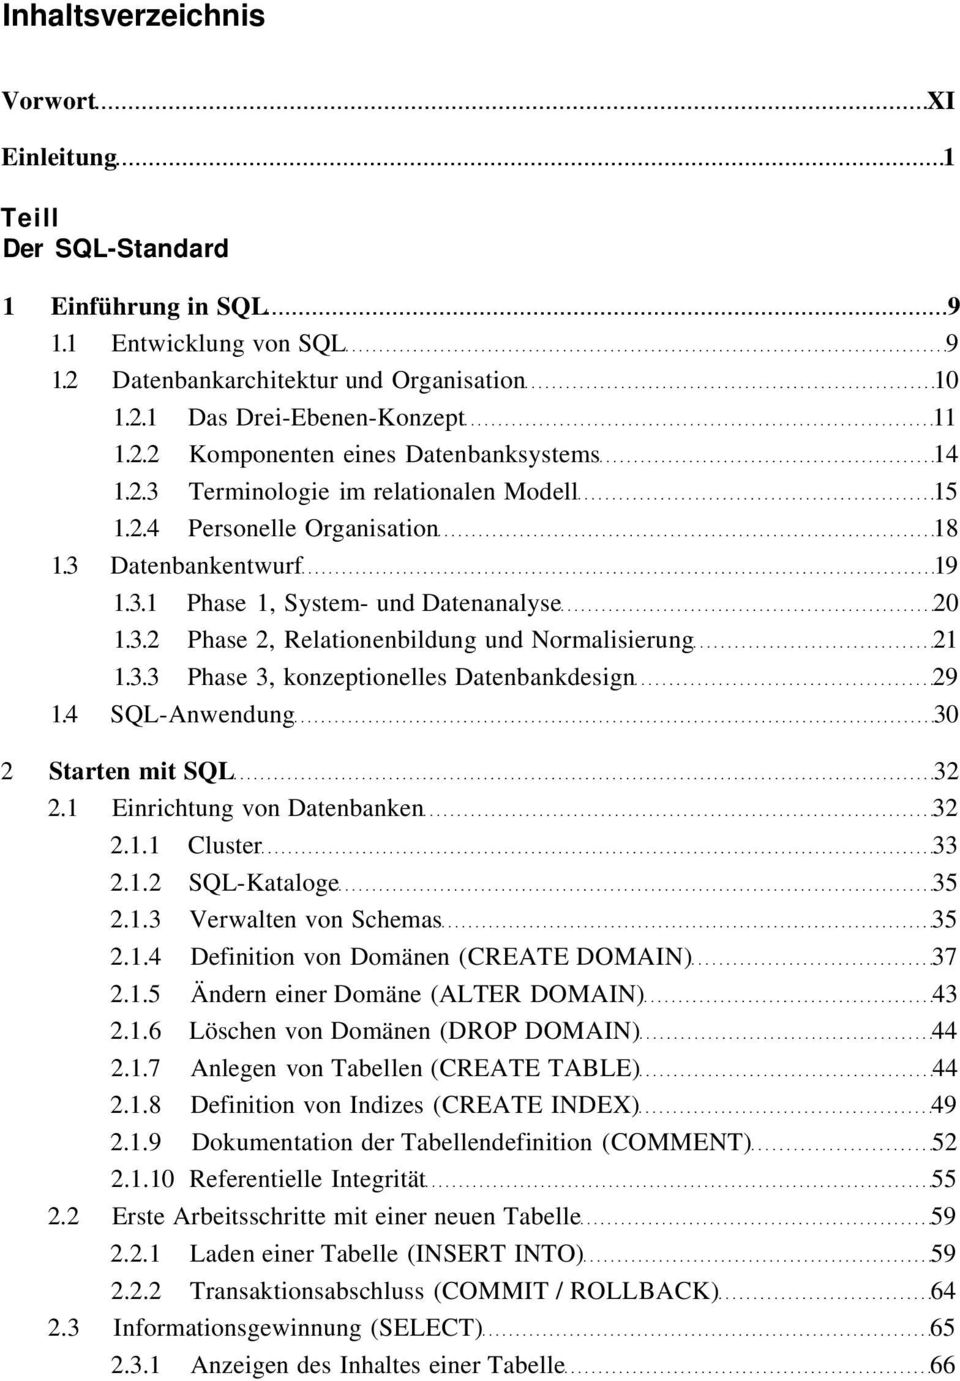 3.3 Phase 3, konzeptionelles Datenbankdesign 29 1.4 SQL-Anwendung 30 2 Starten mit SQL 32 2.1 Einrichtung von Datenbanken 32 2.1.1 Cluster 33 2.1.2 SQL-Kataloge 35 2.1.3 Verwalten von Schemas 35 2.1.4 Definition von Domänen (CREATE DOMAIN) 37 2.